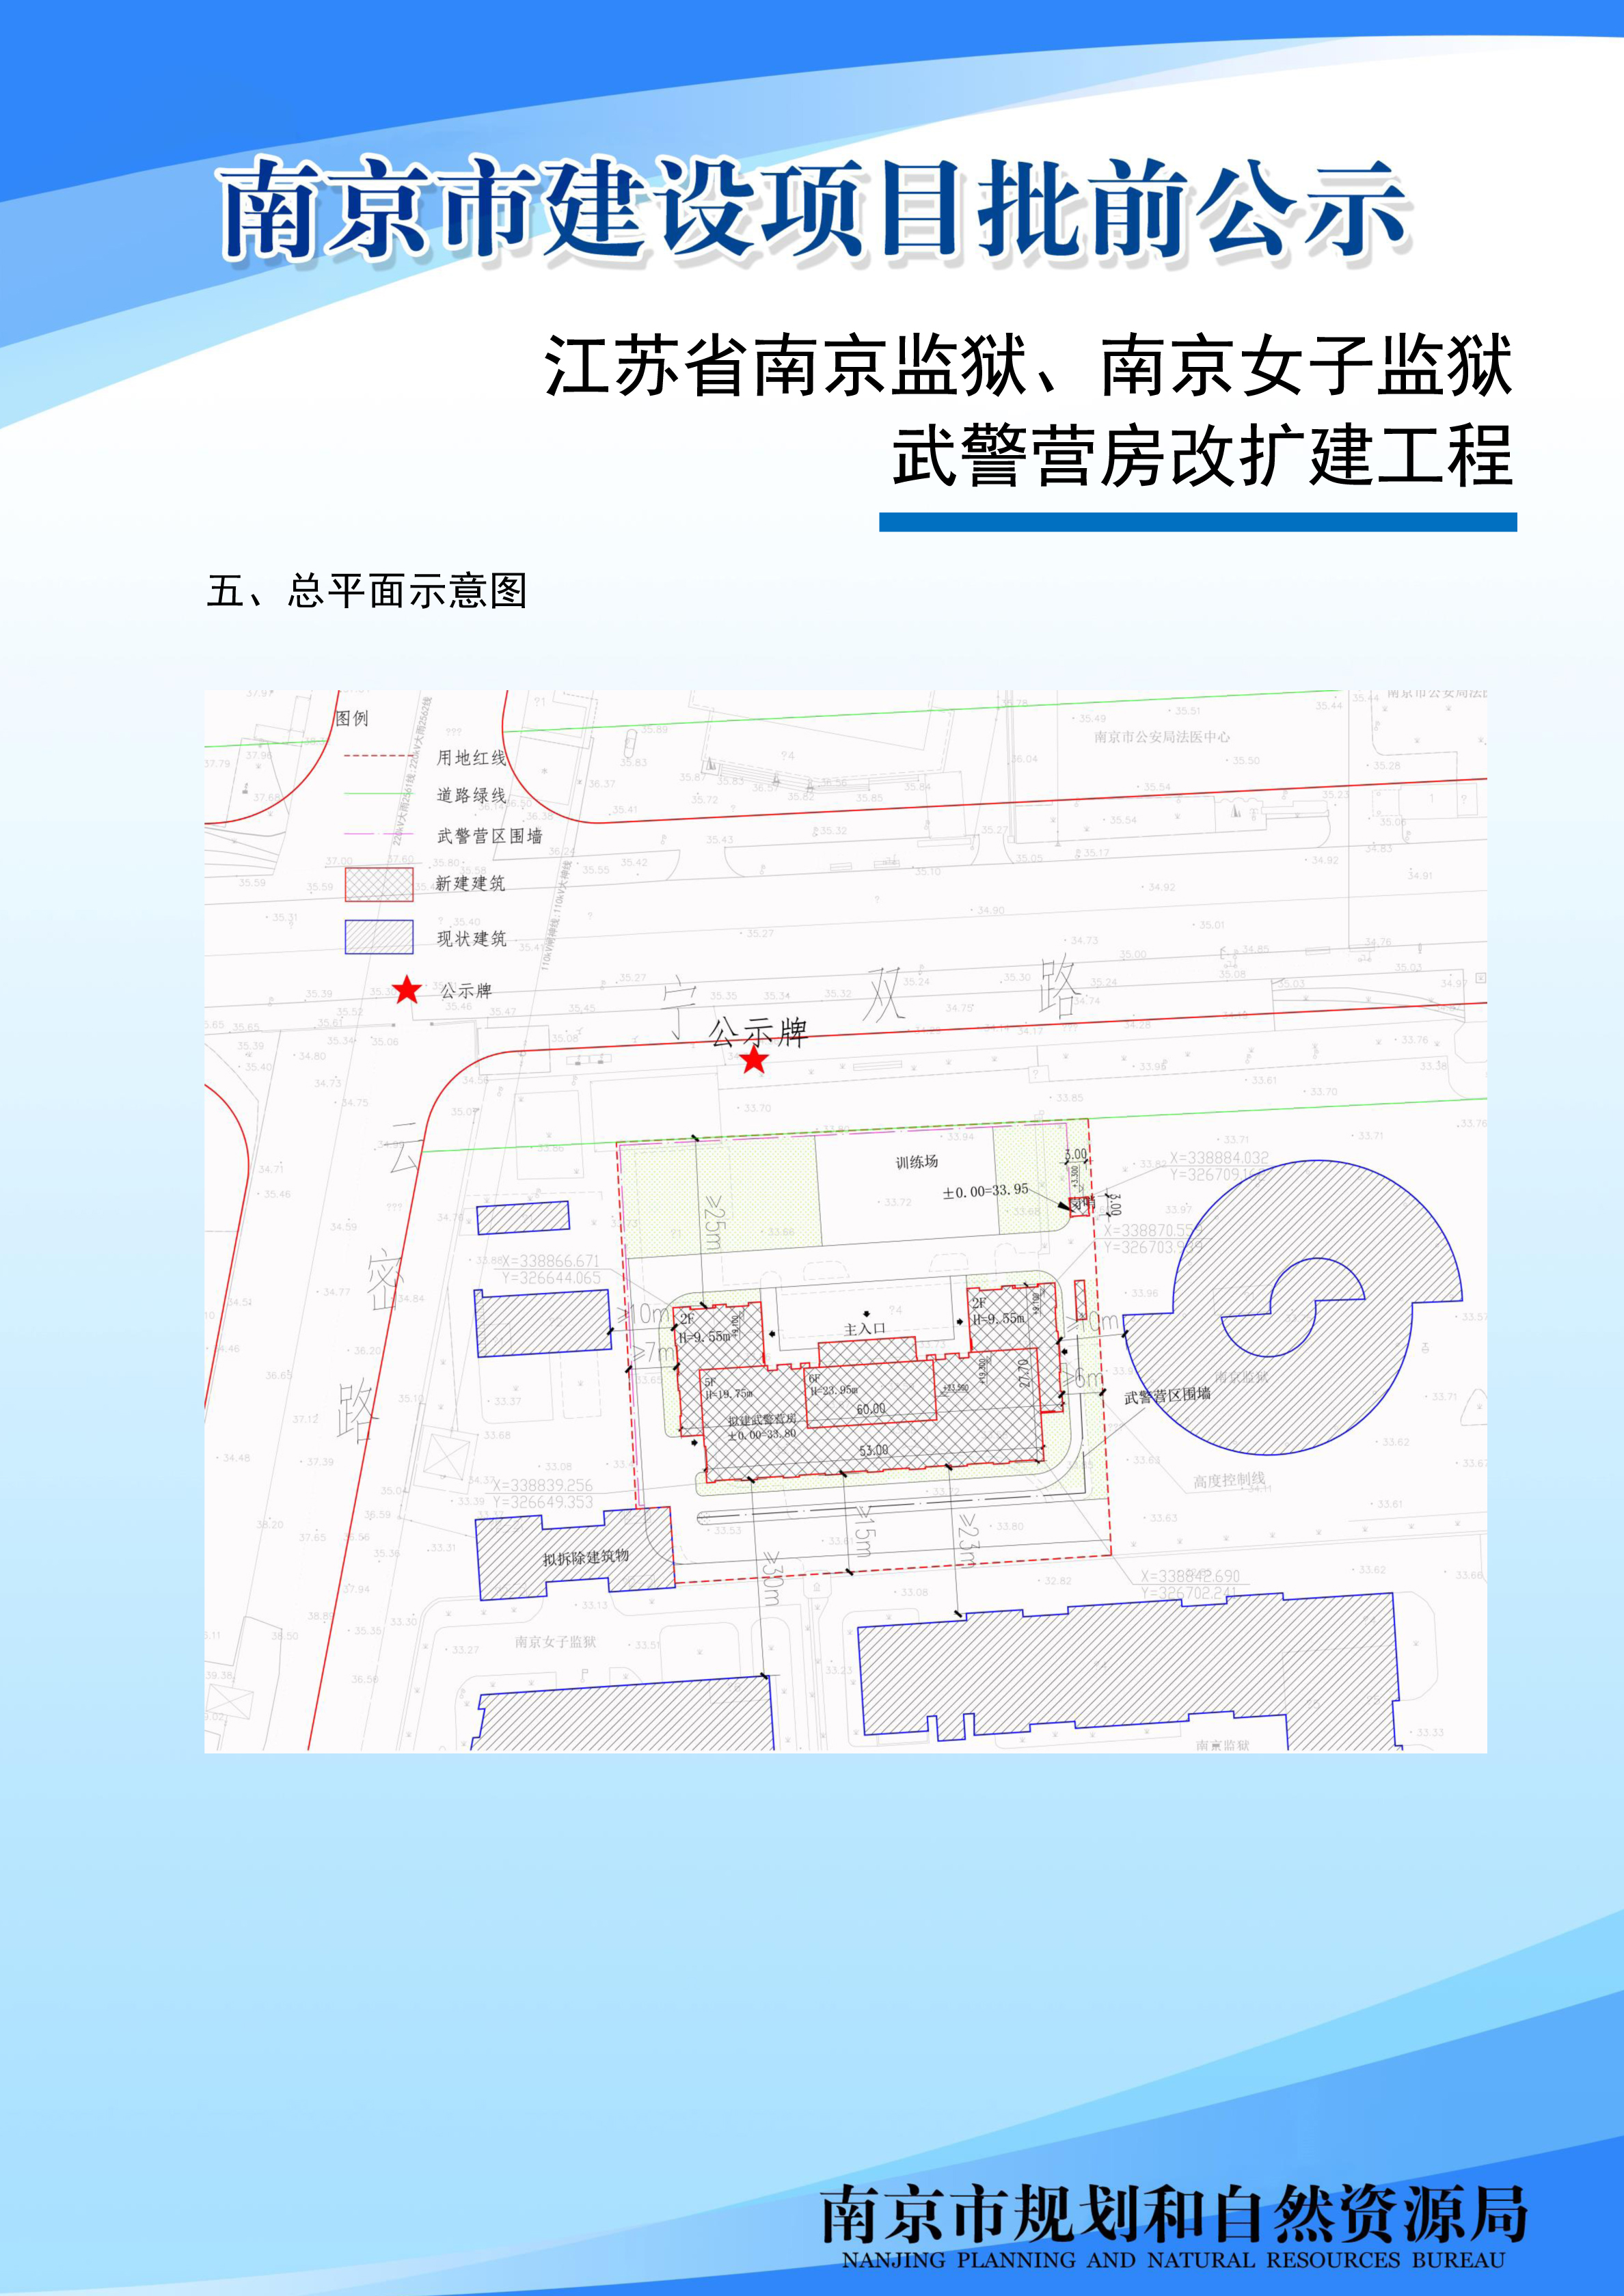 江苏省南京监狱、南京女子监狱武警营房改扩建工程